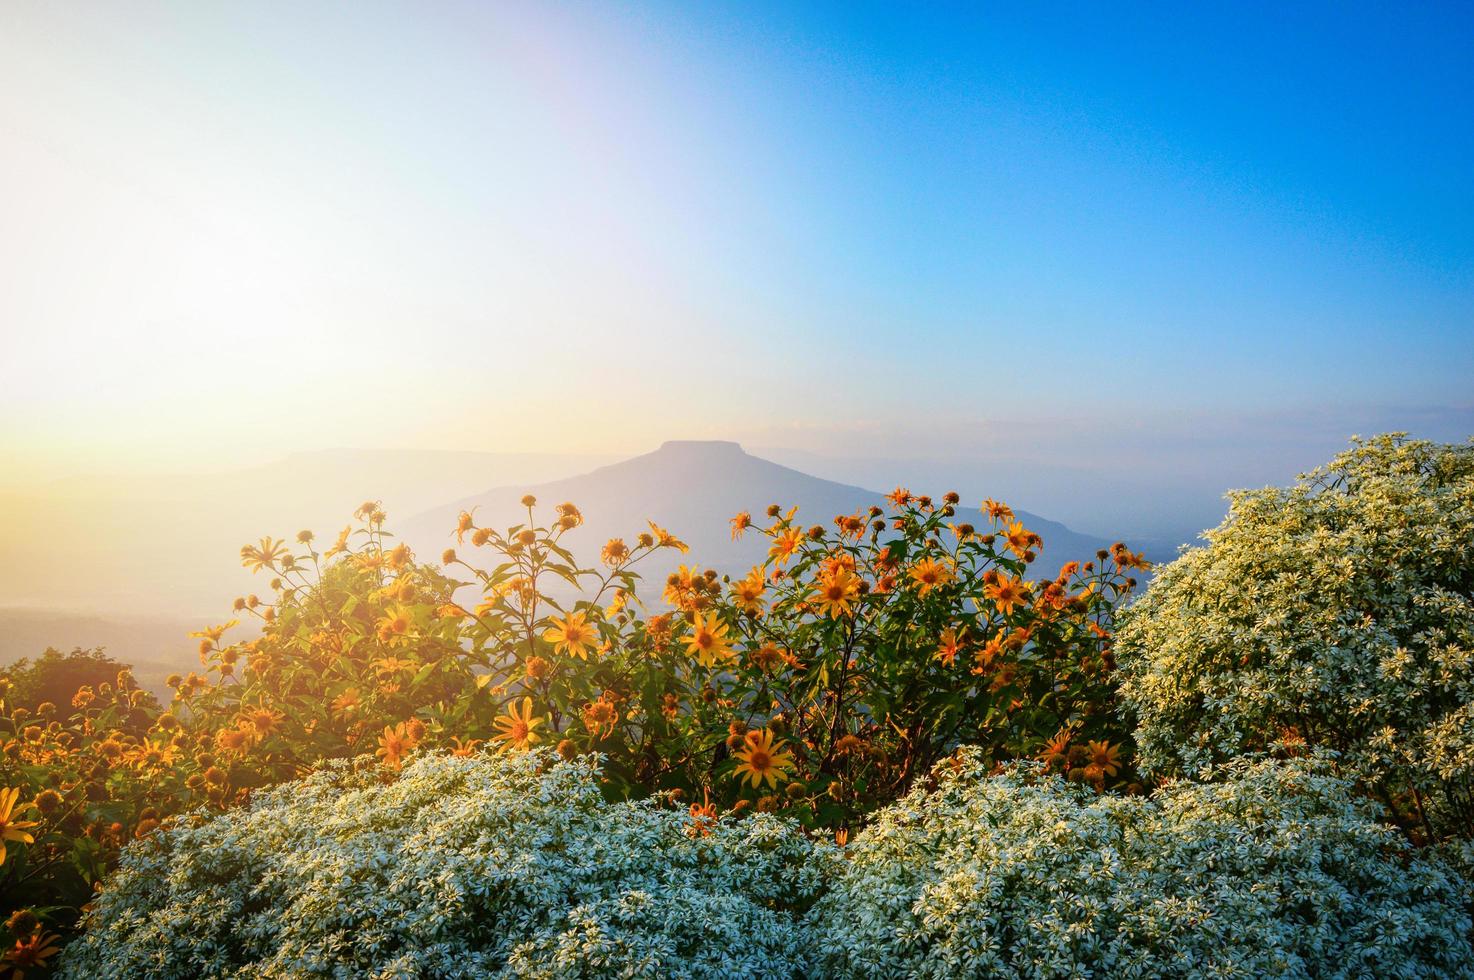 paisaje tailandia hermoso paisaje de montaña vista en la colina con árbol caléndula campo de flores amarillas y blancas foto